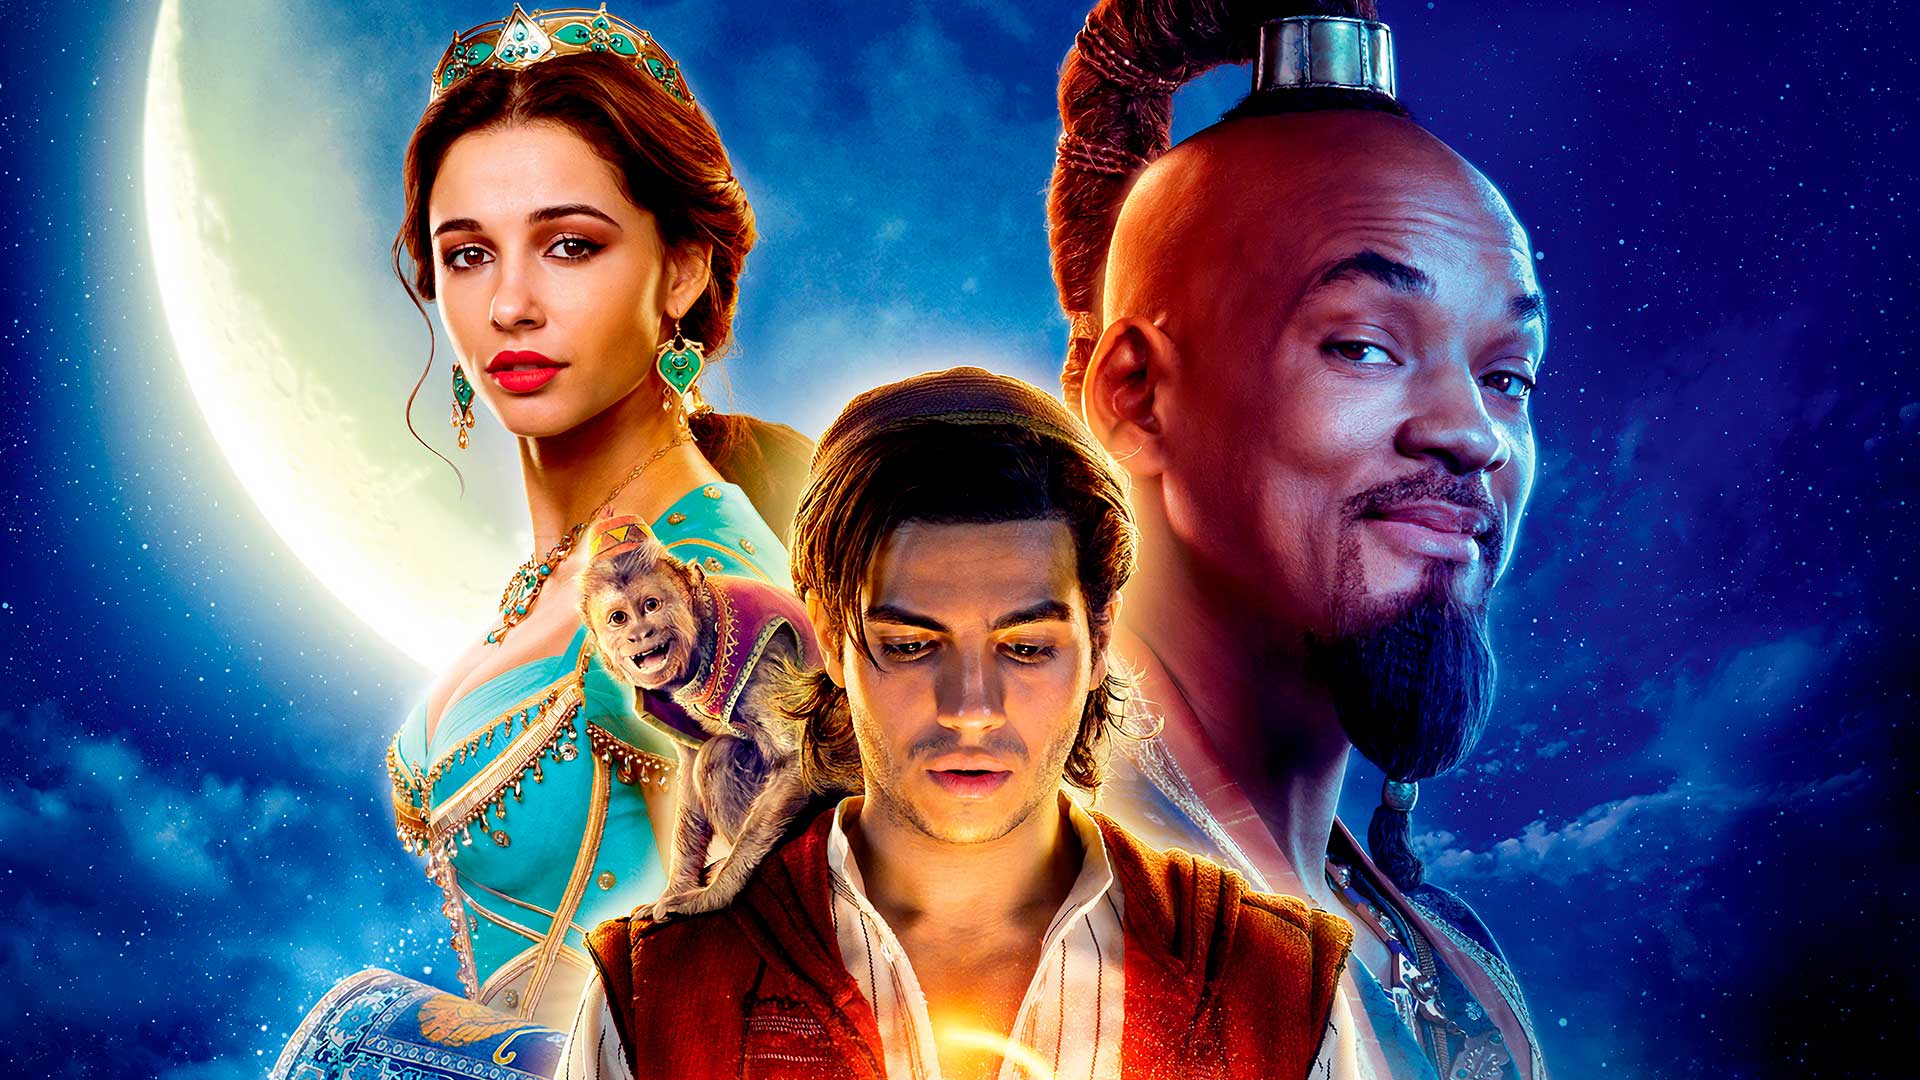 Aladdin O Novo Live Action Da Disney Melhor Do Que Esper Vamos